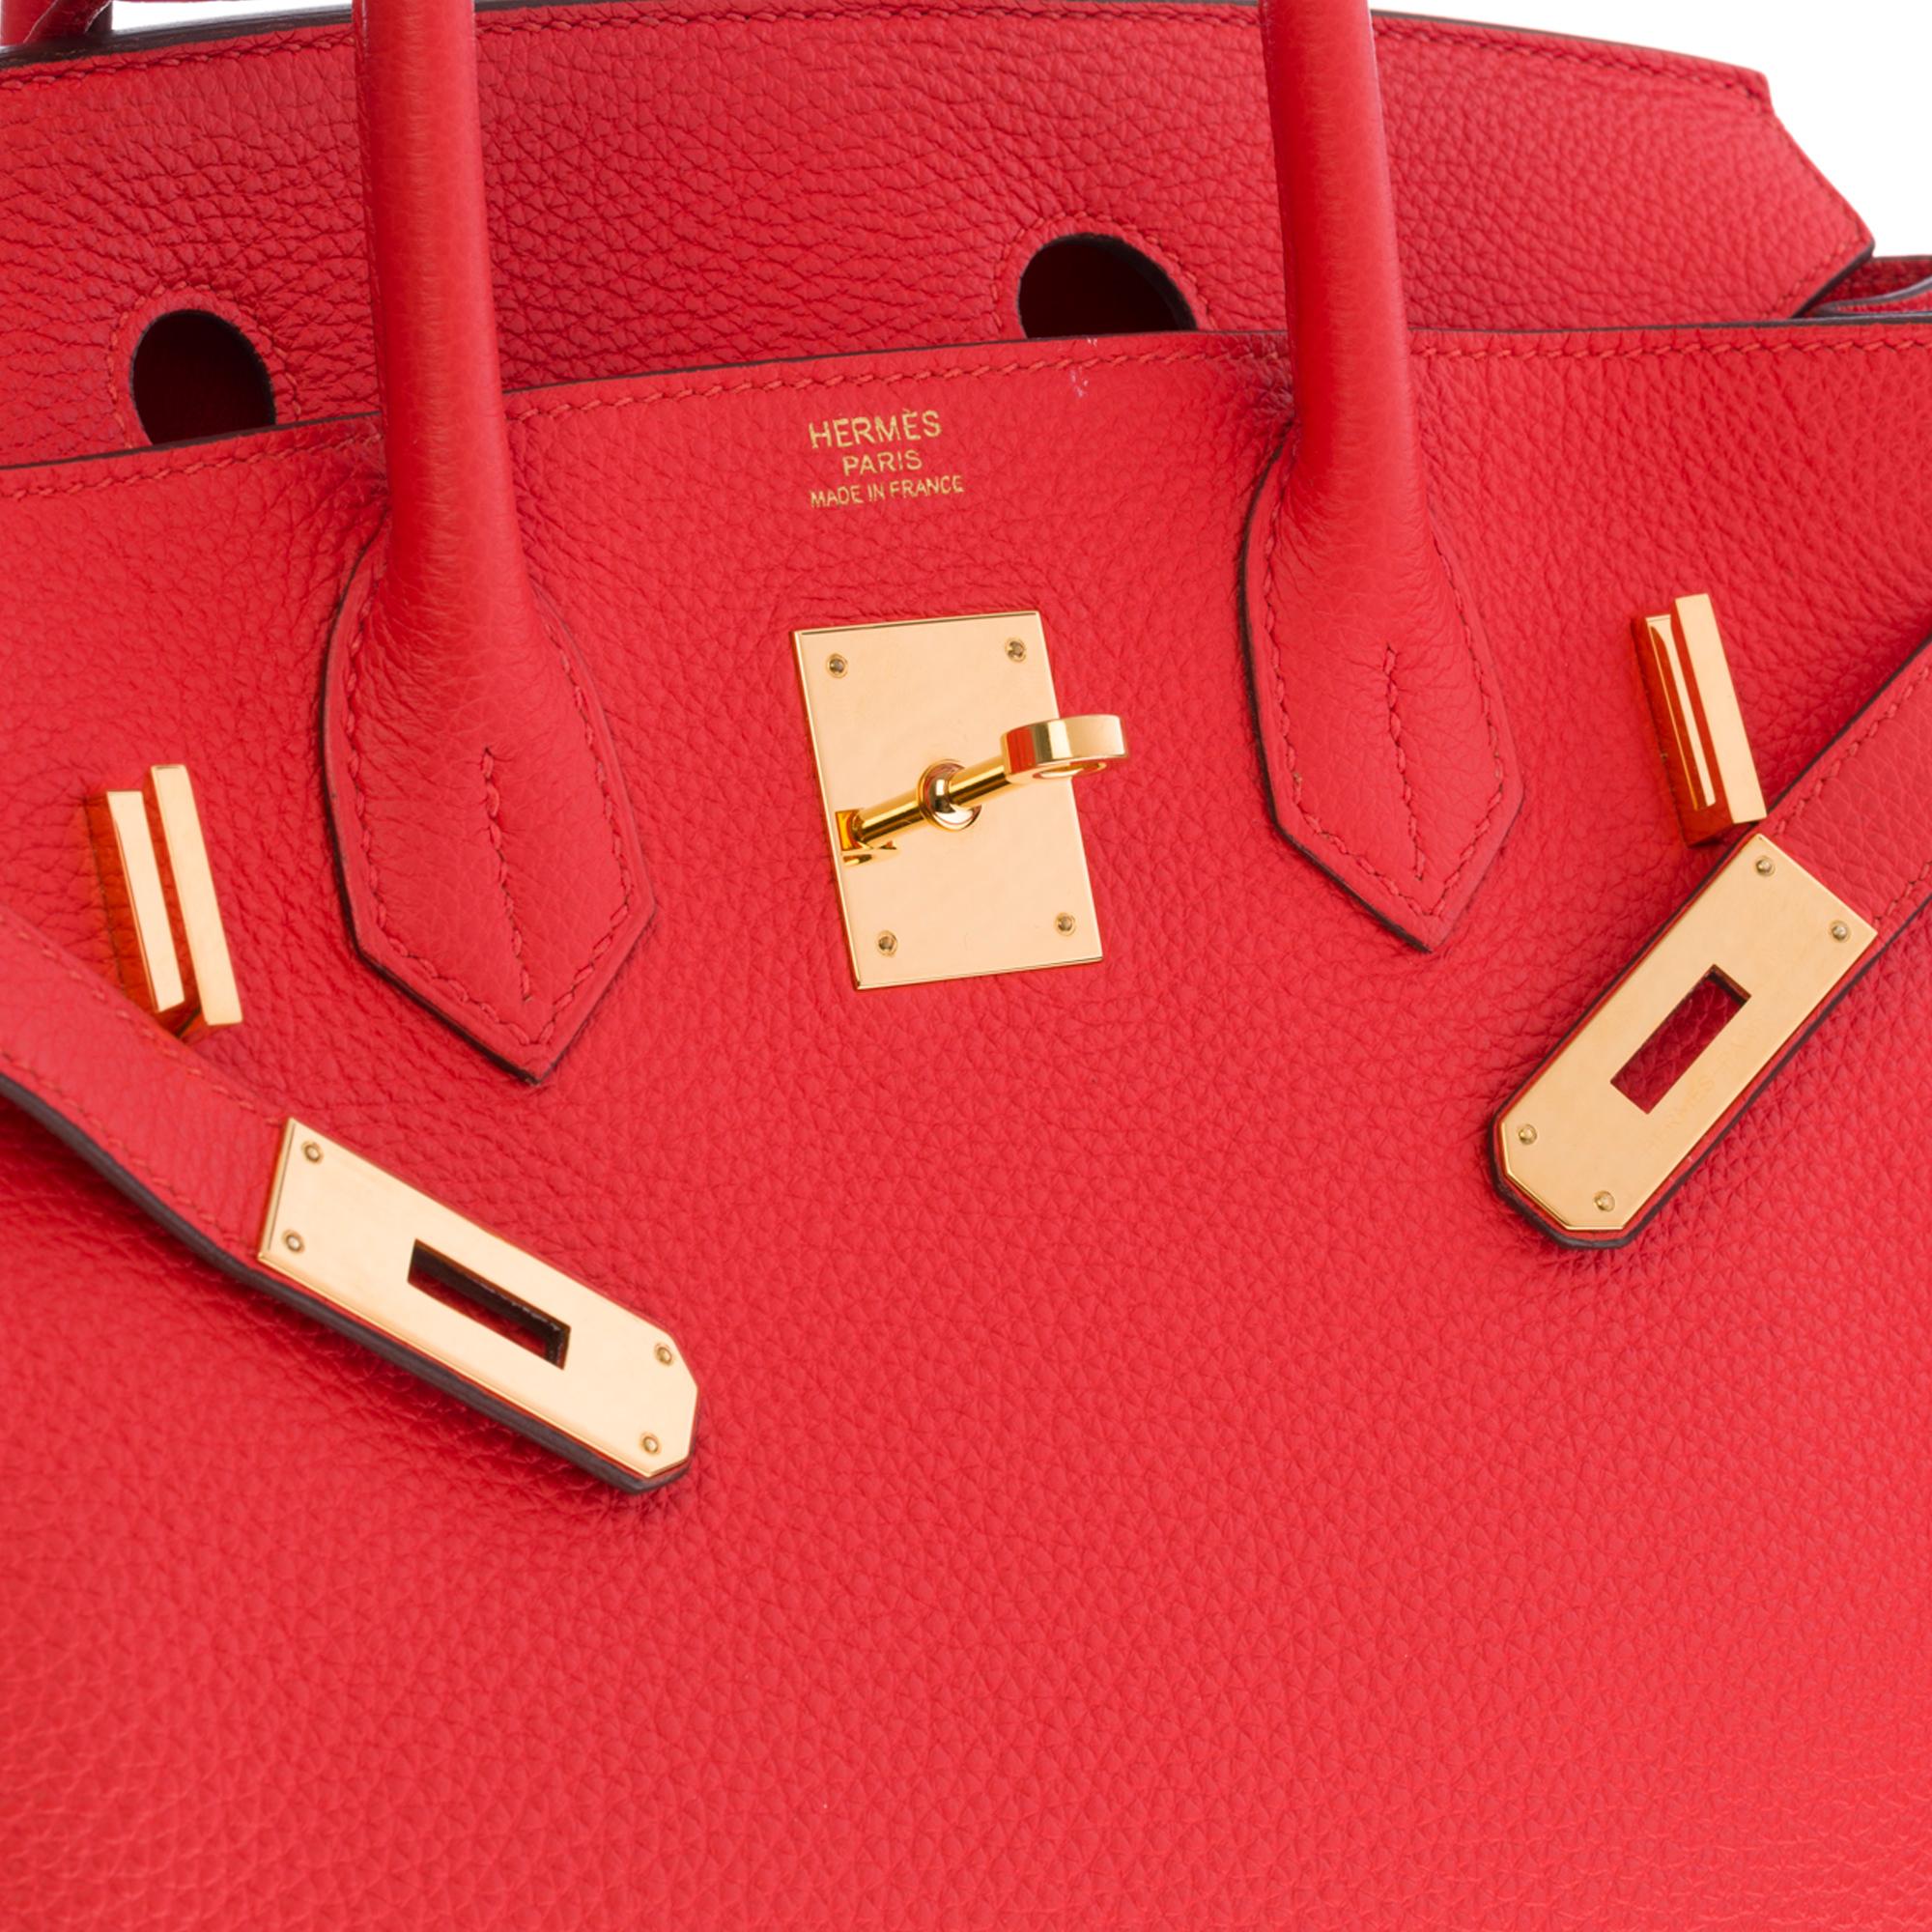 Women's Stunning Hermès Birkin 30 handbag in Rouge Capucine Togo leather, GHW